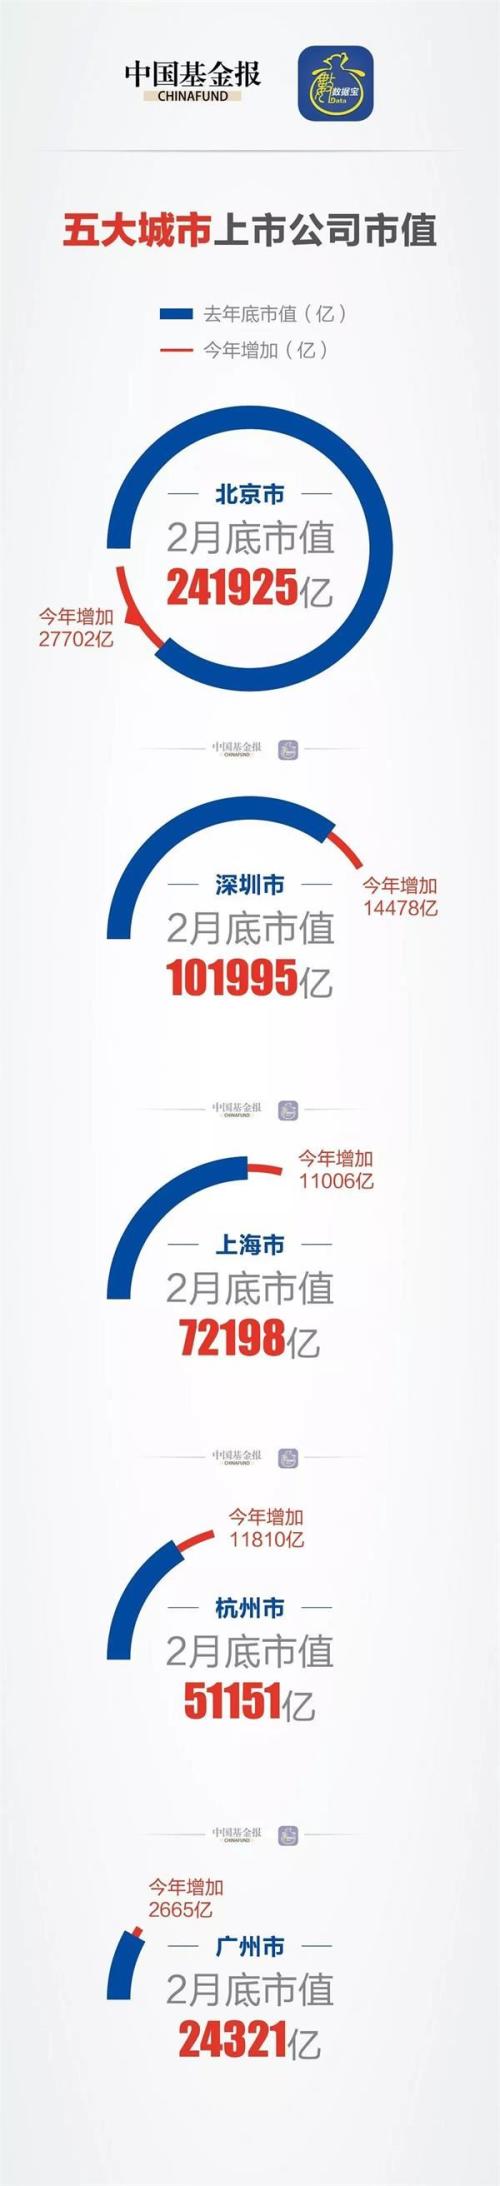 深圳GDP刚超香港 上市公司市值又超10万亿:比上海高出4个成都